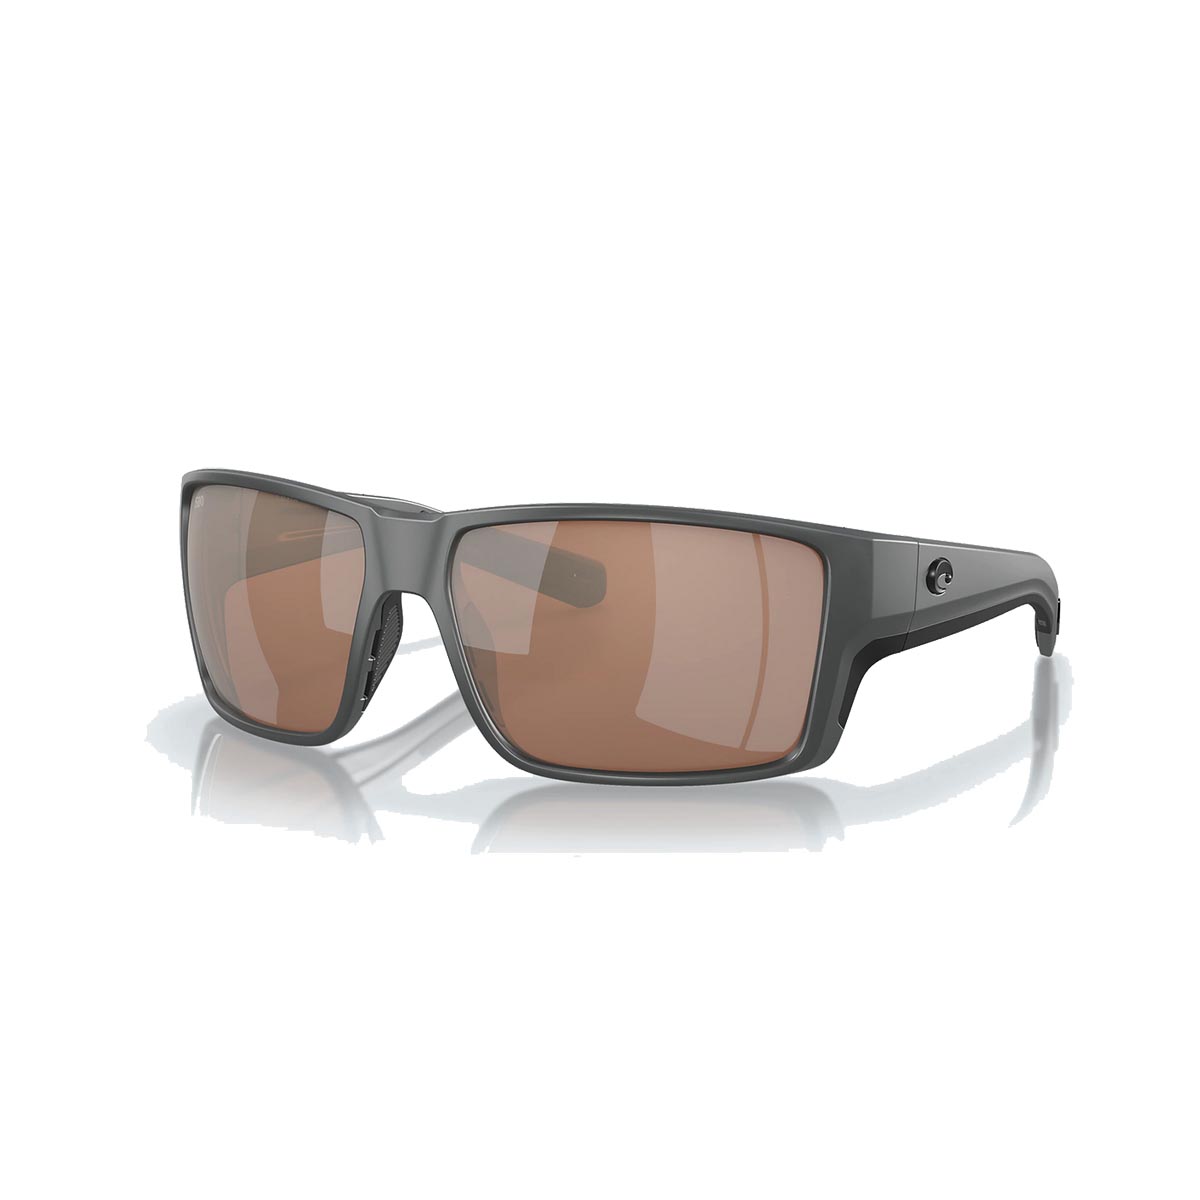 Costa Reefton PRO Sunglasses Polarized in Grey with Copper Silver Mirror 580G